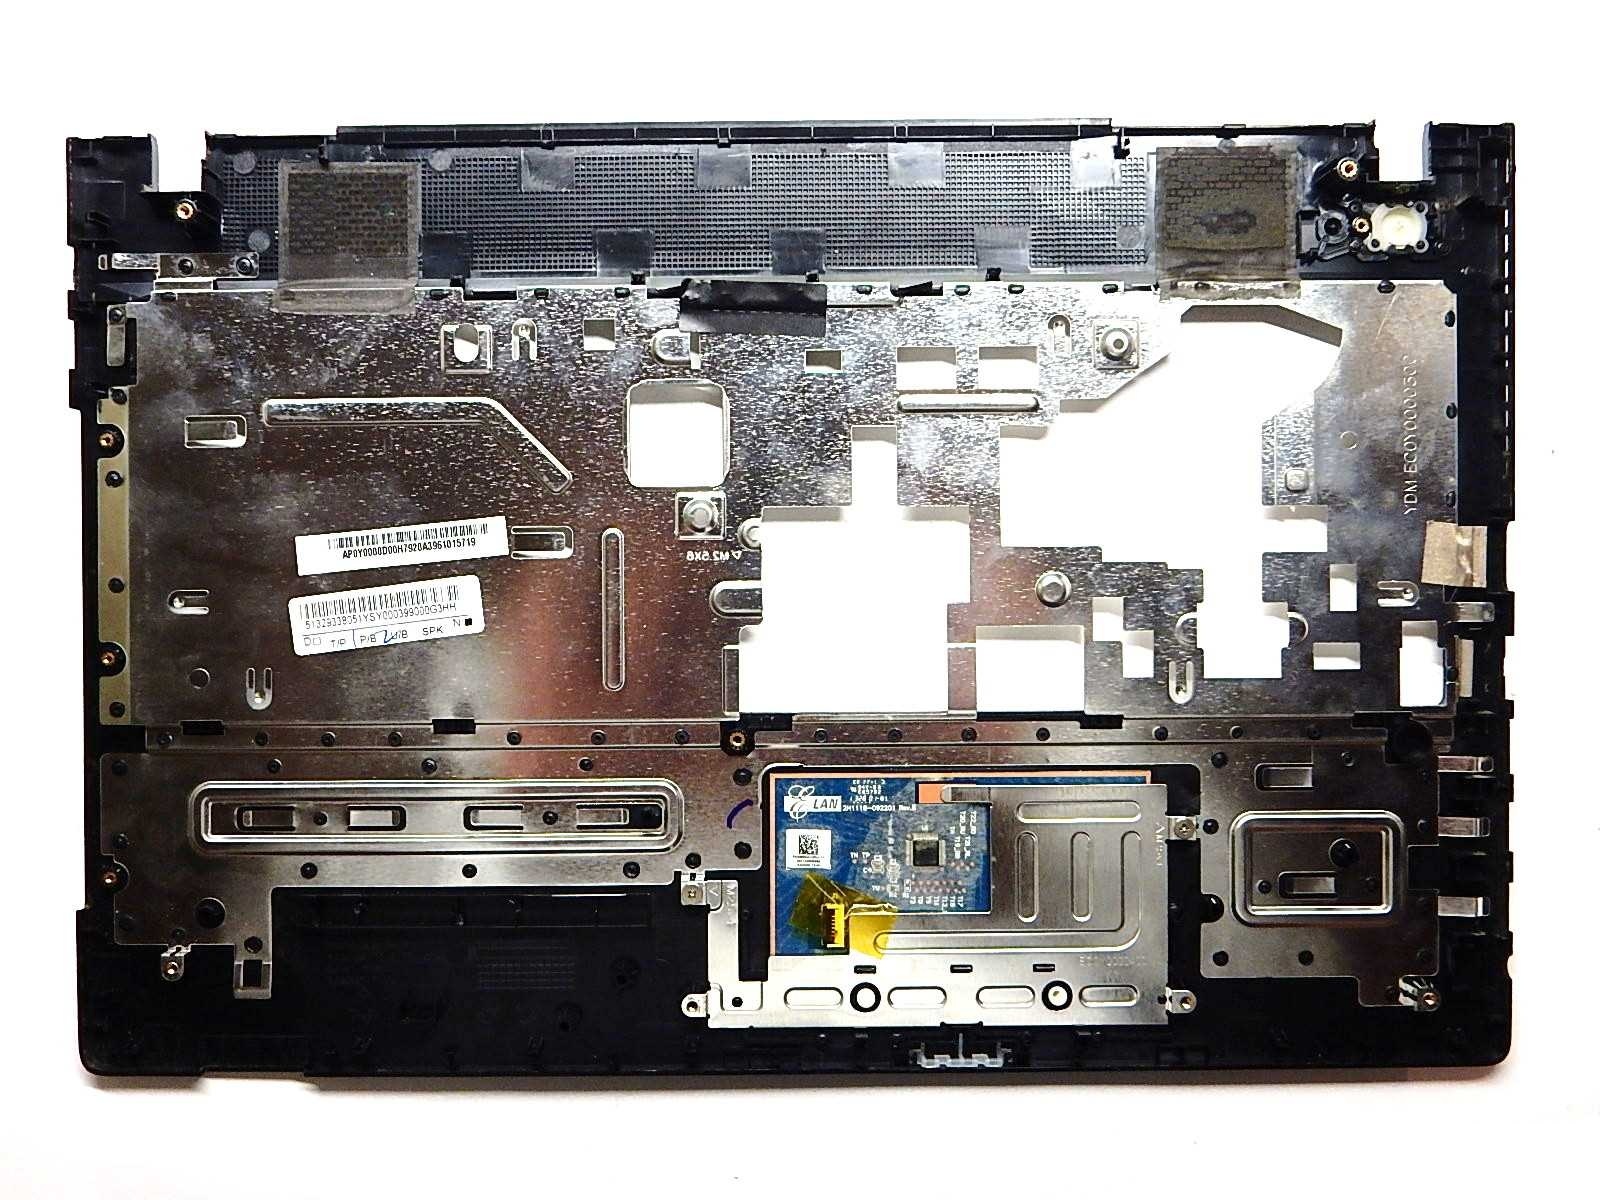 Купить Ноутбук Lenovo Ideapad G510a